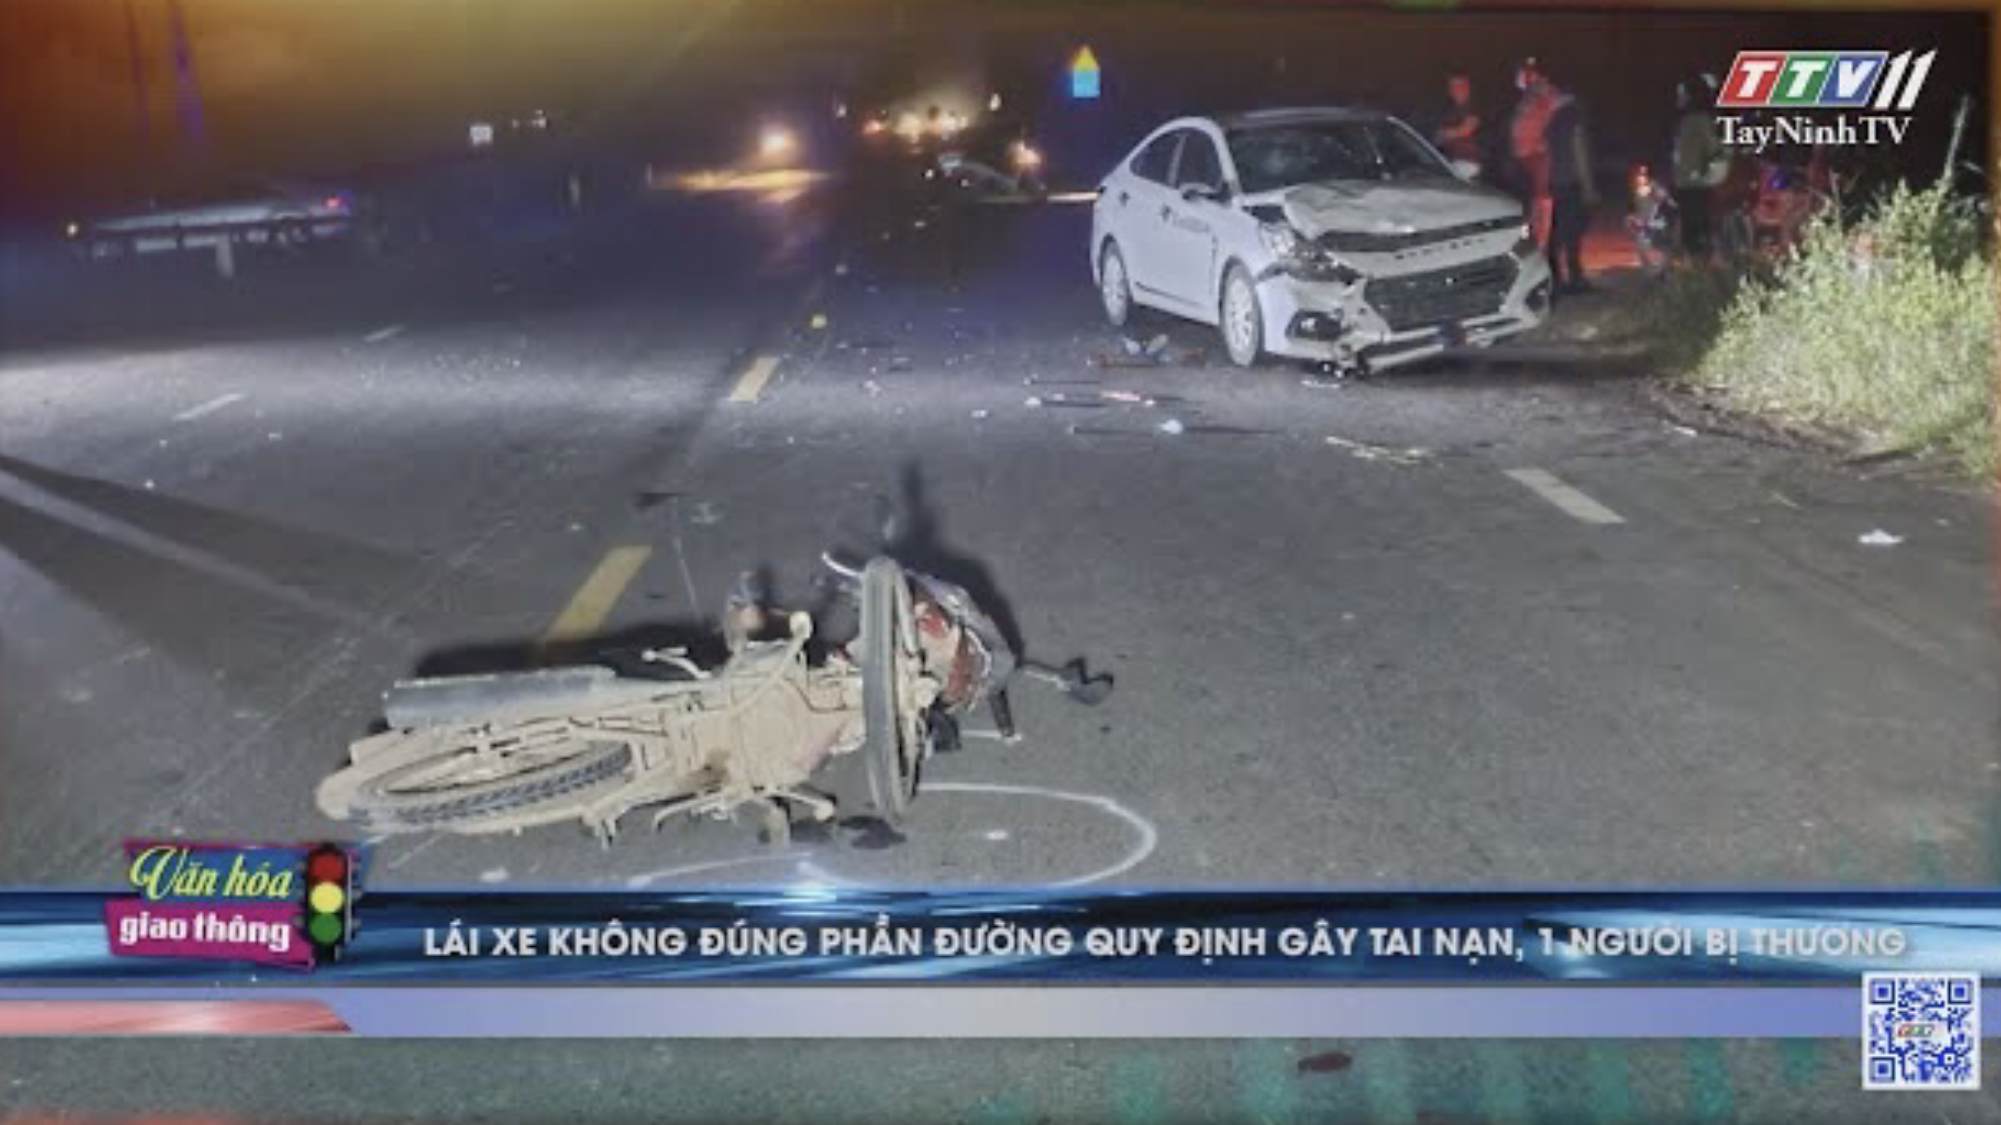 Lái xe không đúng phần đường quy định gây tai nạn,1 người bị thương | VĂN HÓA GIAO THÔNG | TayNinhTV